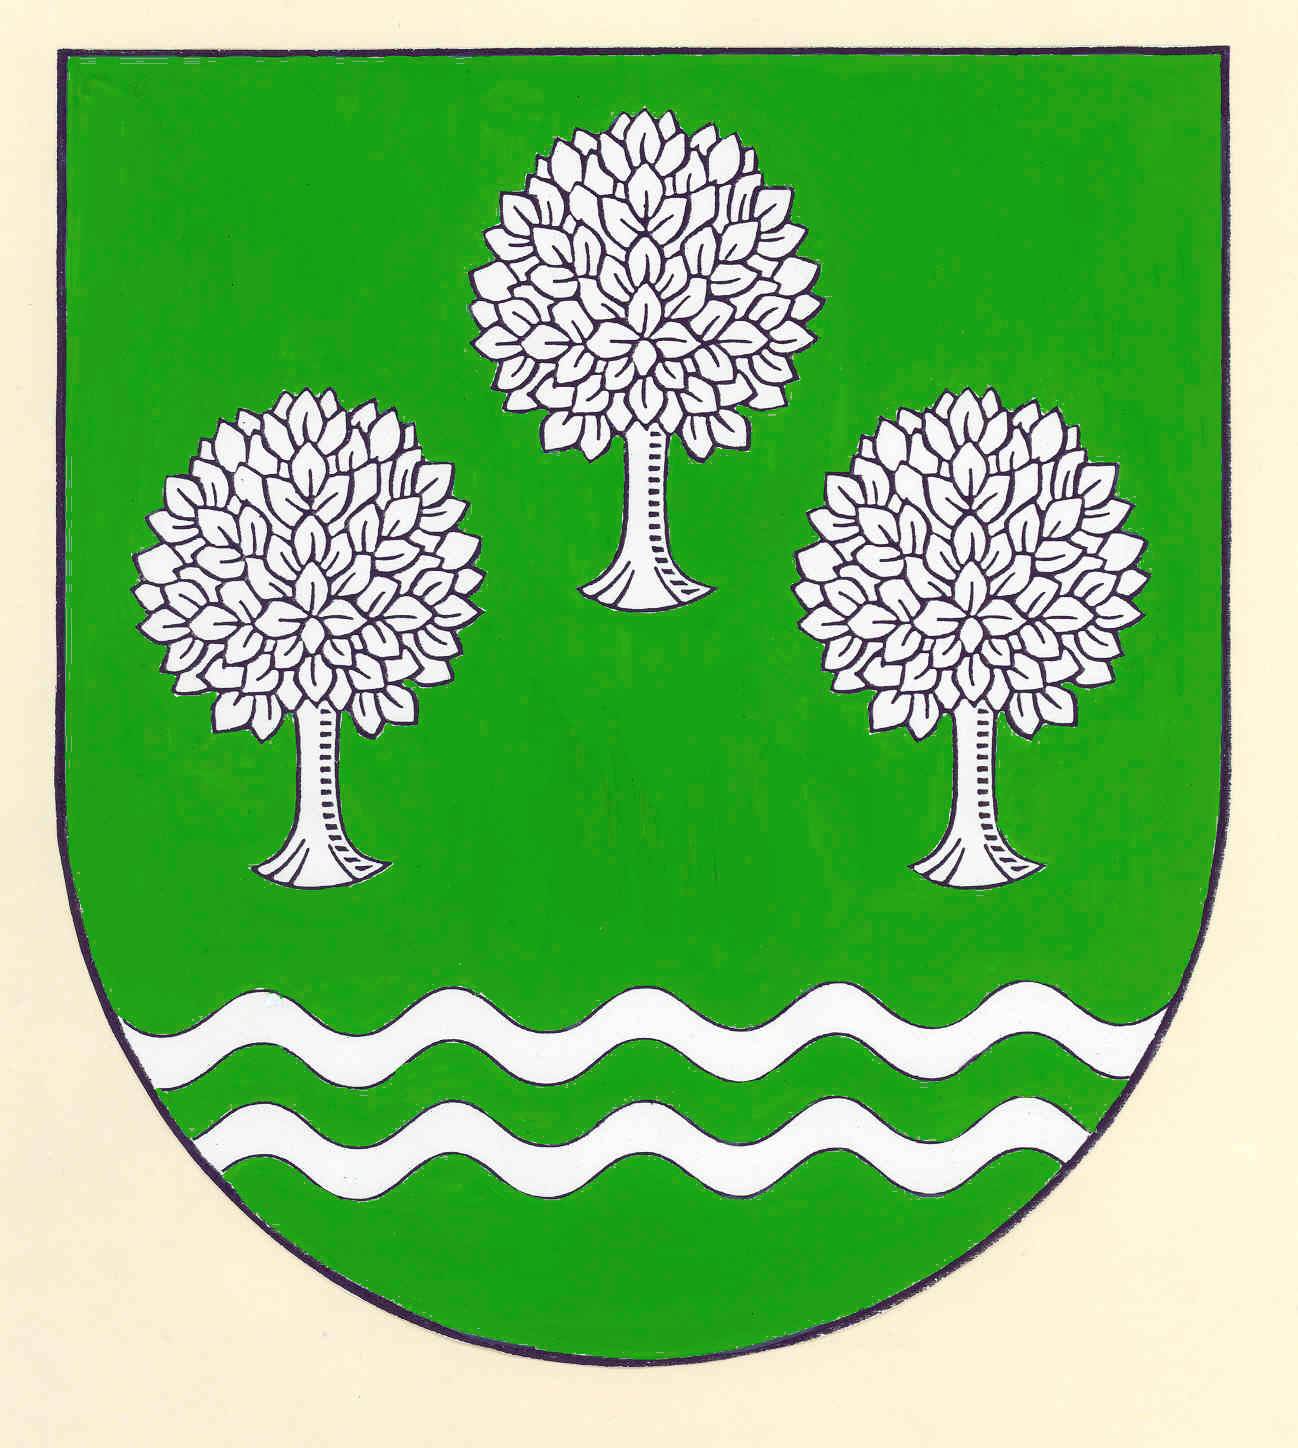 Wappen Gemeinde Wohlde, Kreis Schleswig-Flensburg